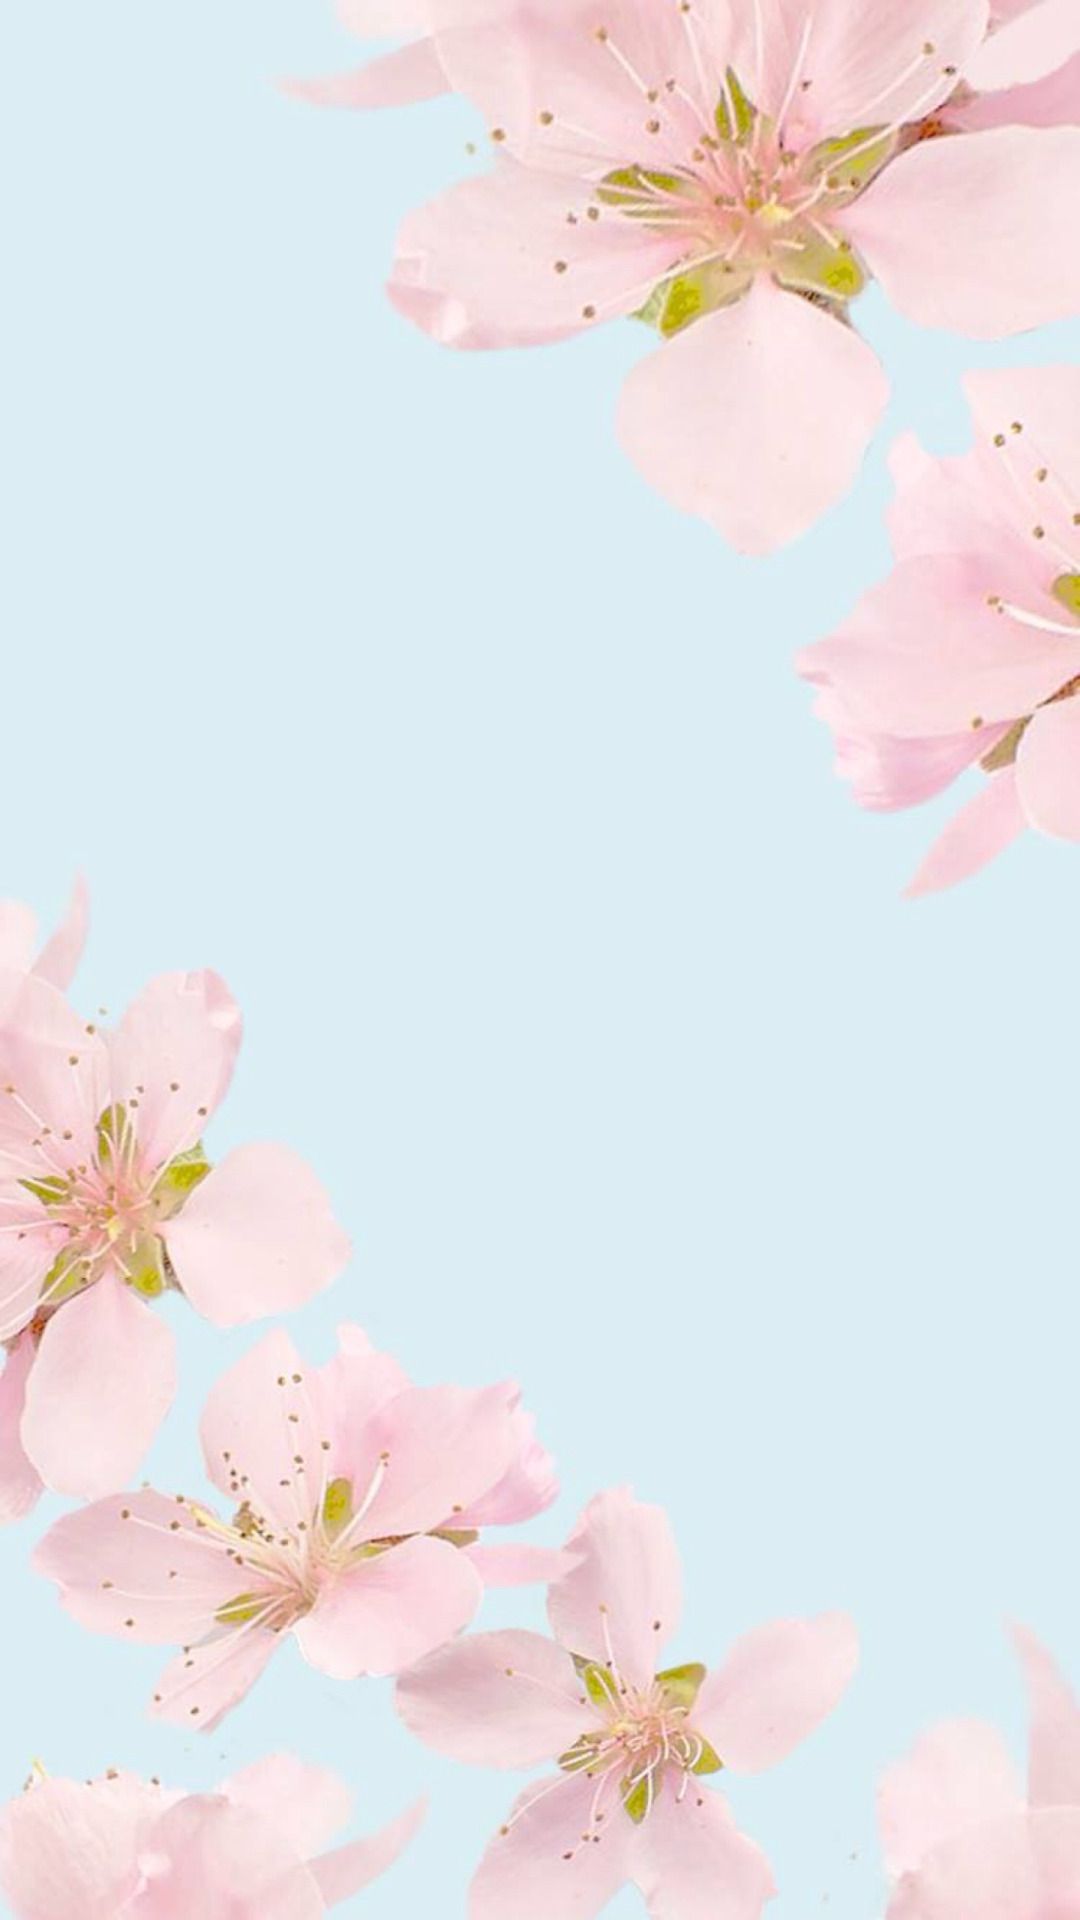 fondos de pantalla bonitos tumblr,rosado,florecer,flor,flor de cerezo,pétalo